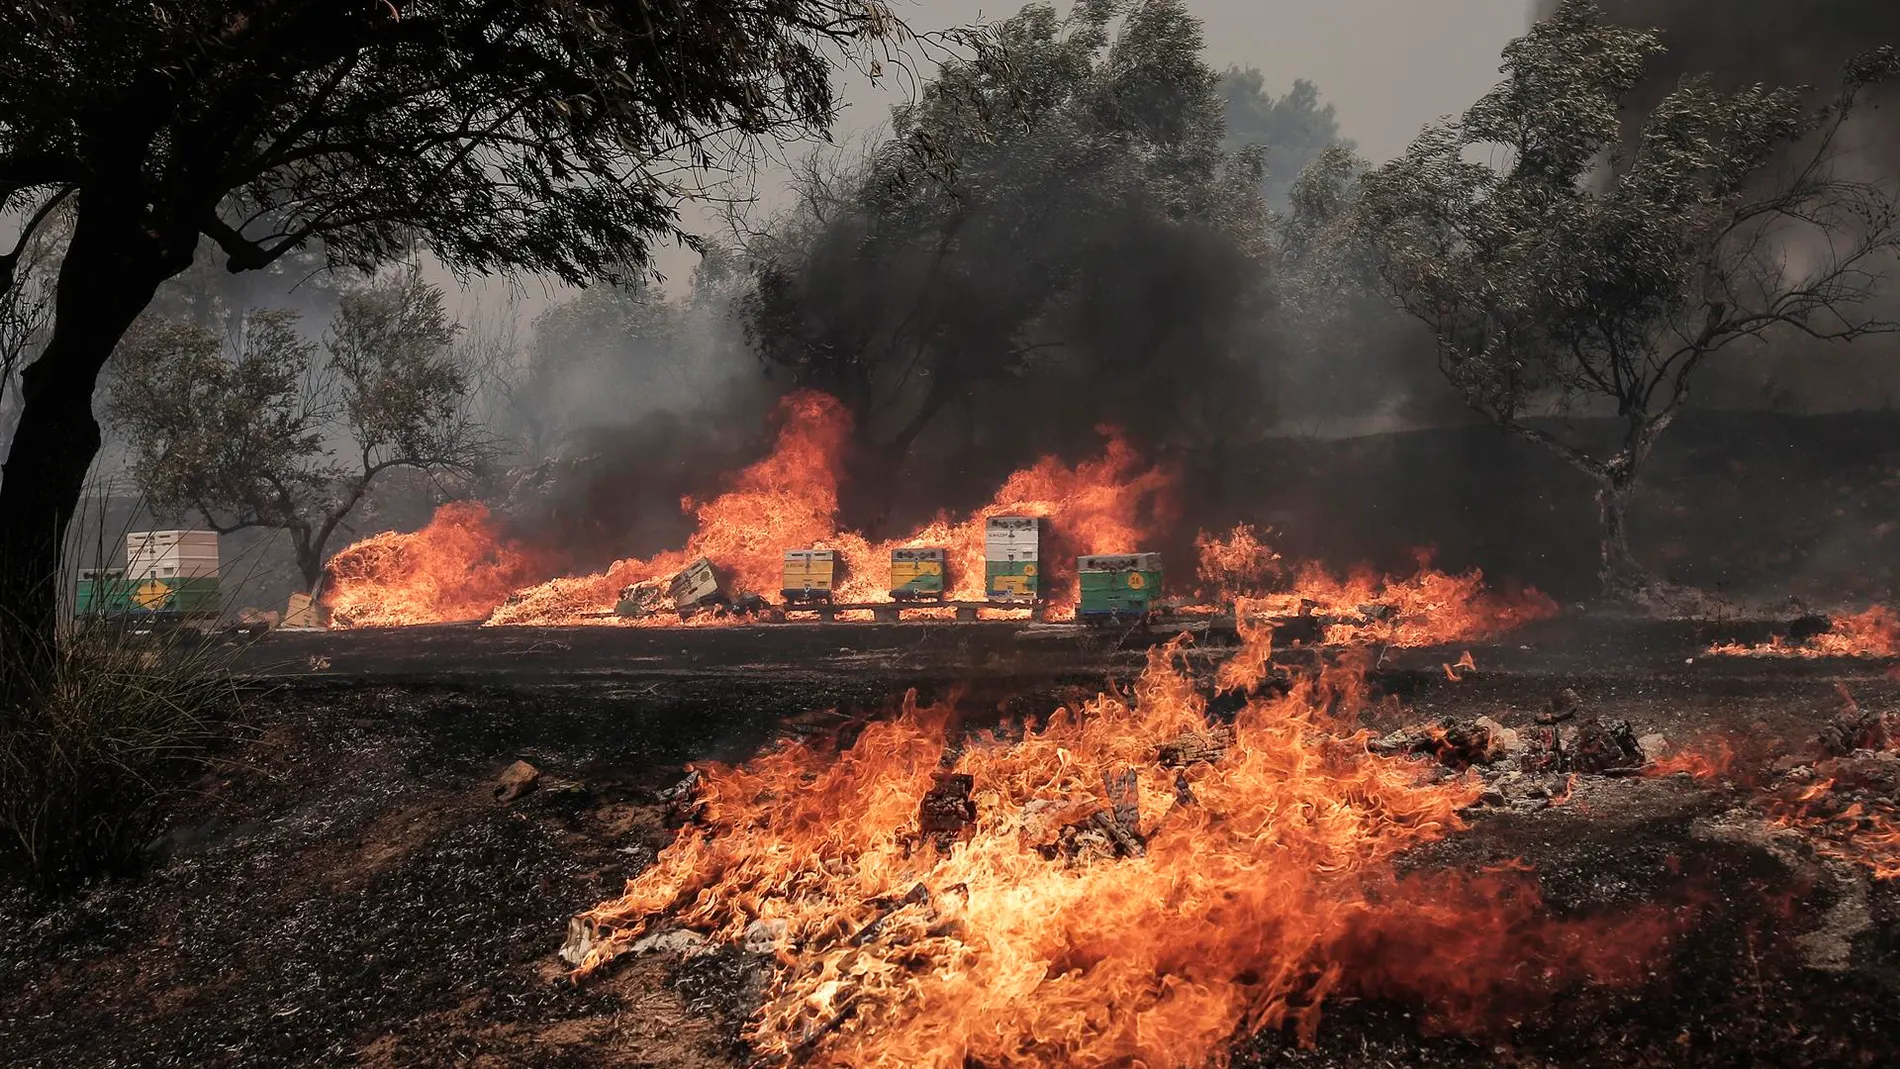 Grecia: Encuentran cuerpos carbonizados tras oleada de incendios forestales